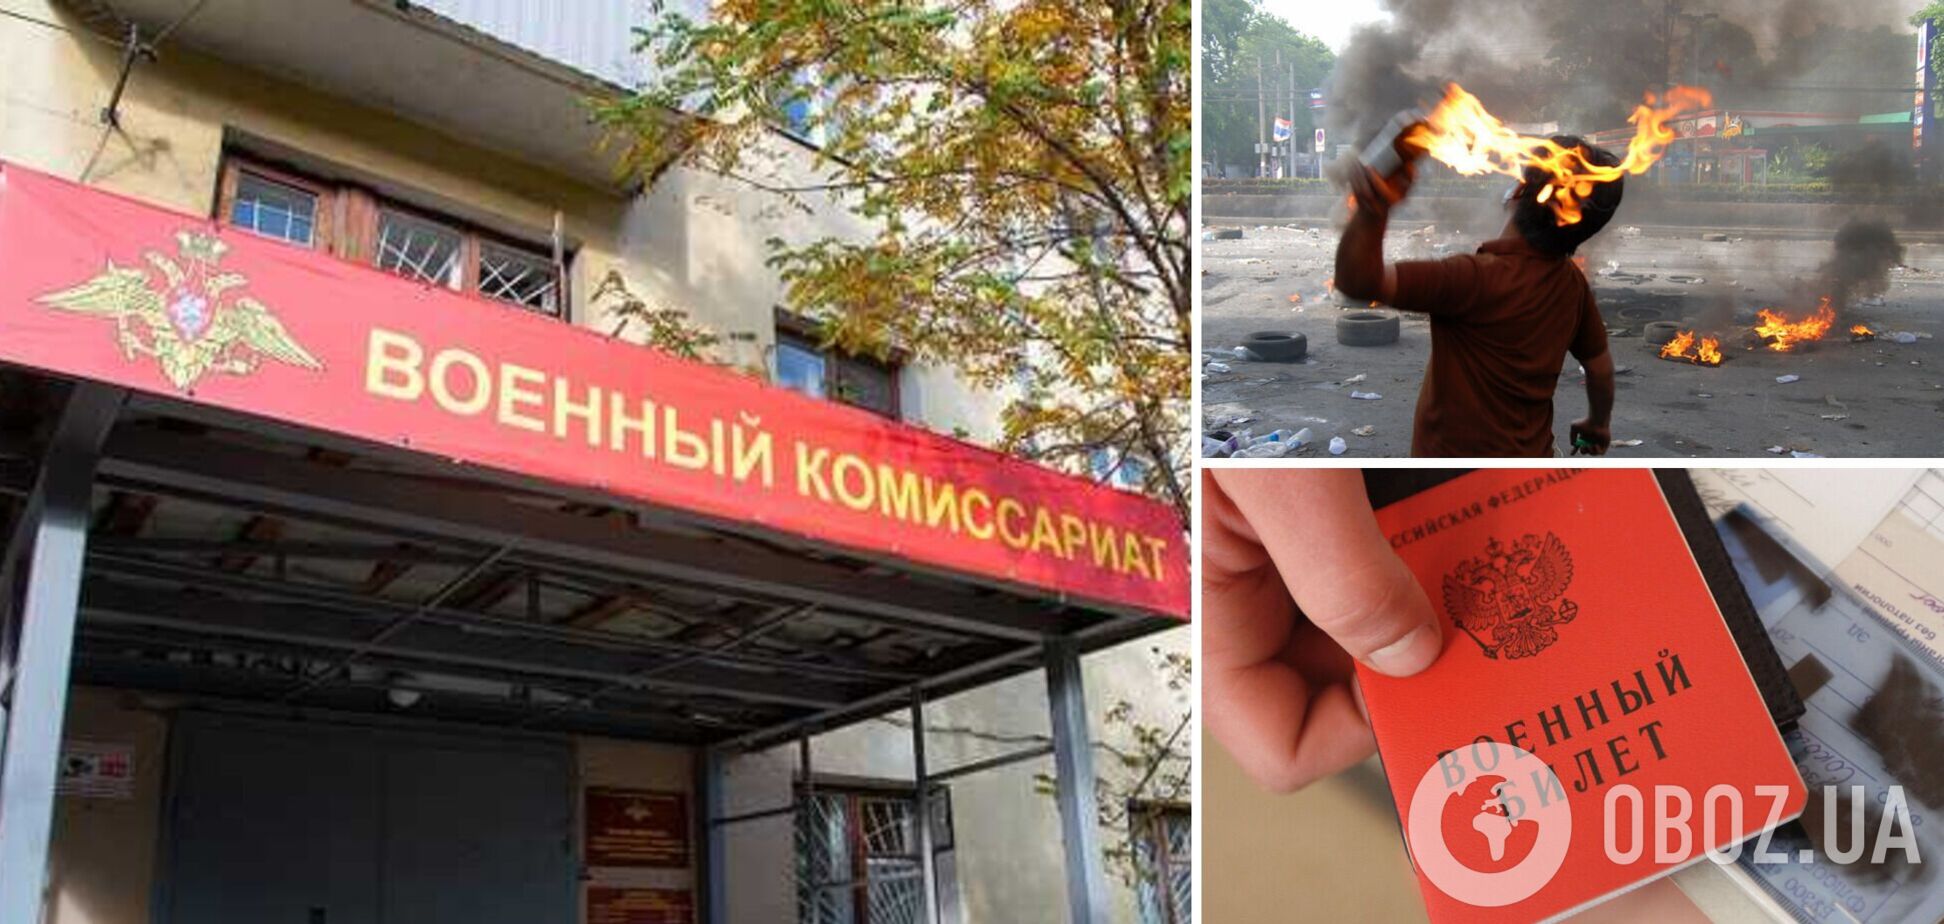 Втретє за два дні: у Петербурзі спробували підпалити військкомат. Фото